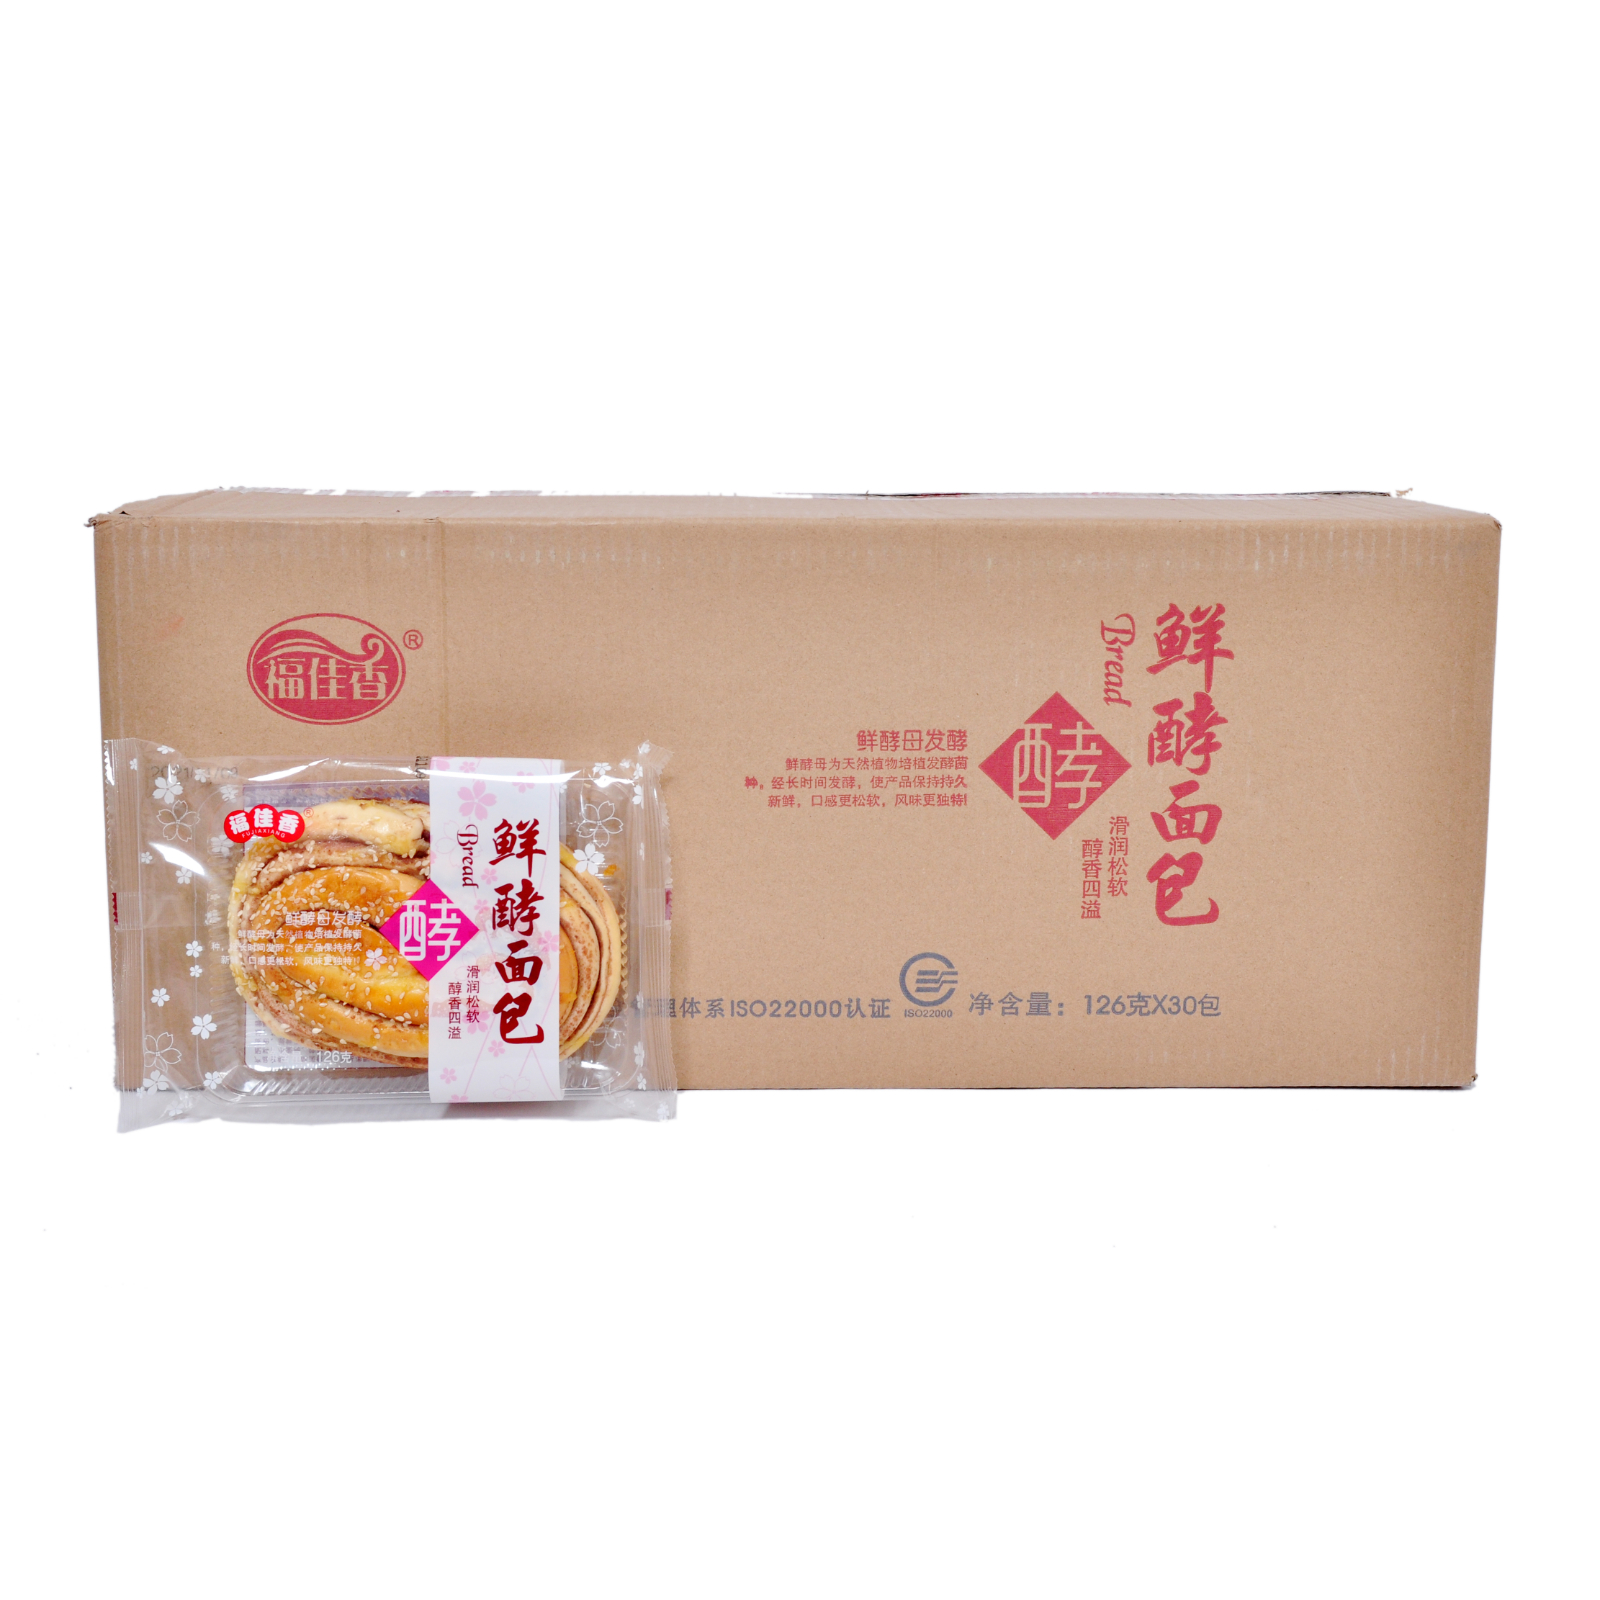 福佳香 鲜酵面包 126g*5袋/组